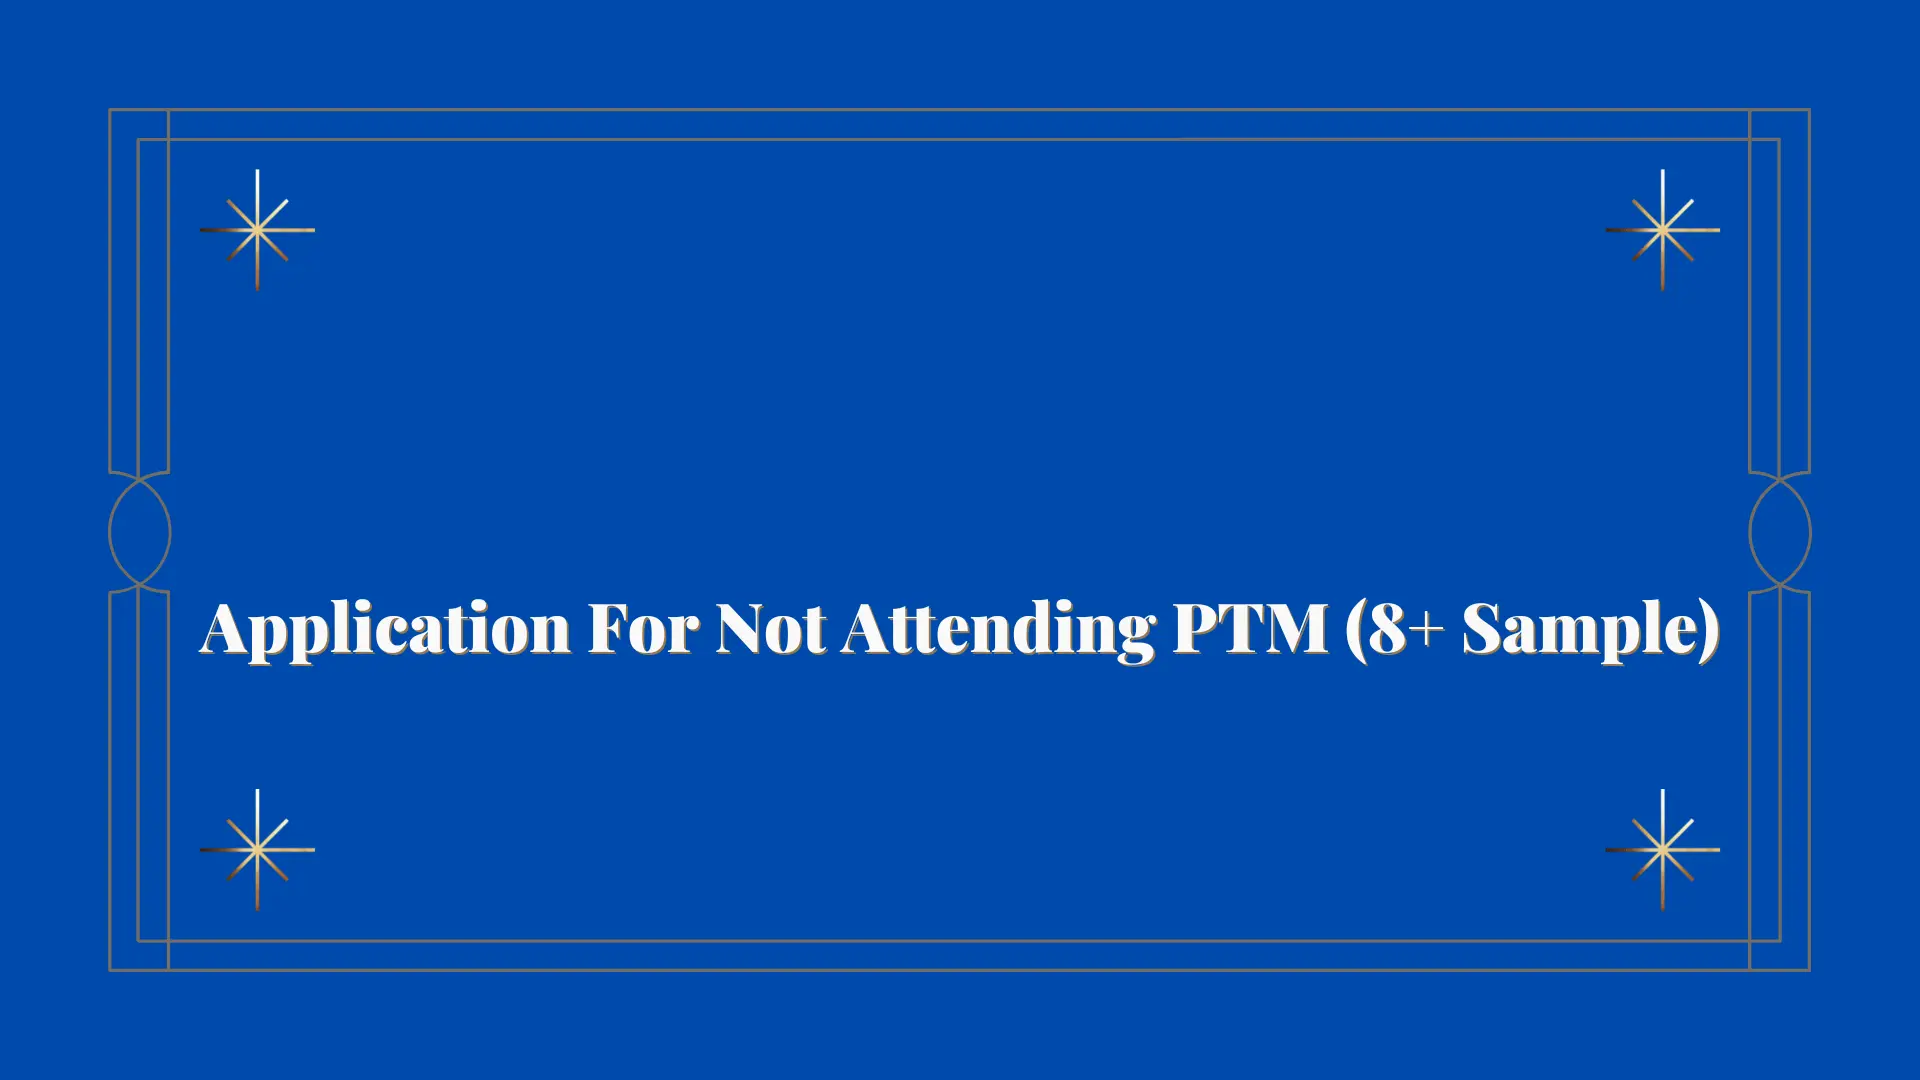 Application For Not Attending PTM (8+ Sample)